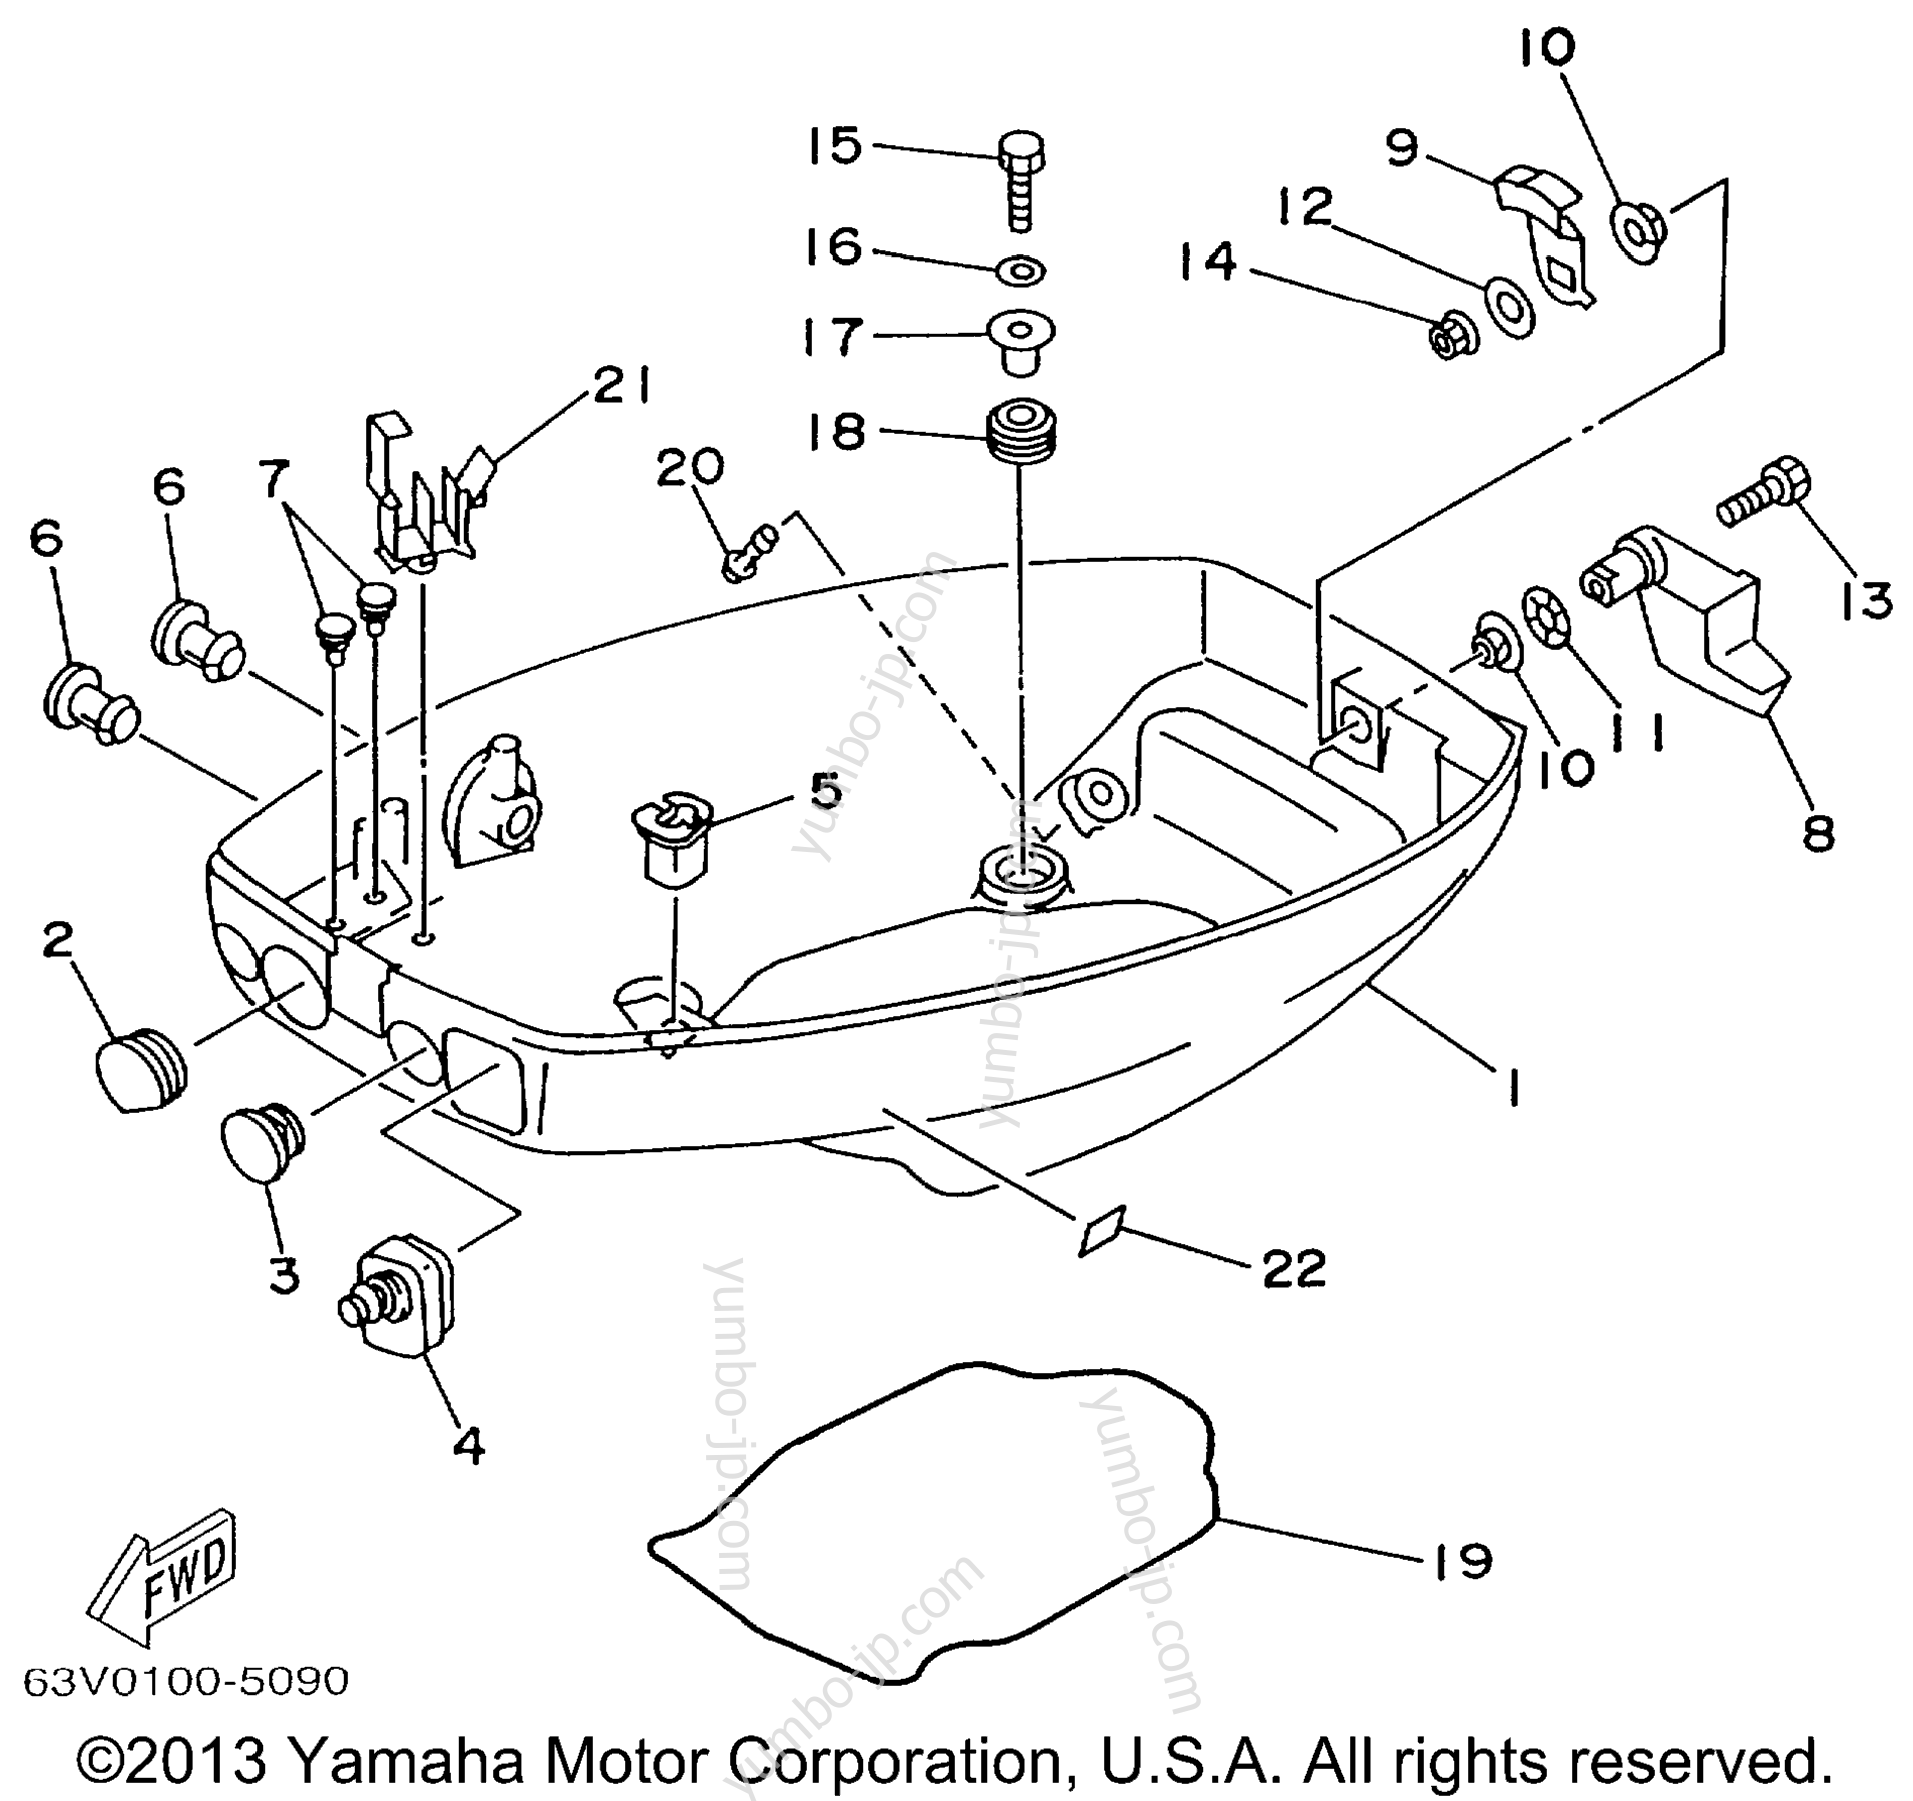 Bottom Cowling для лодочных моторов YAMAHA 15MSHX 1999 г.